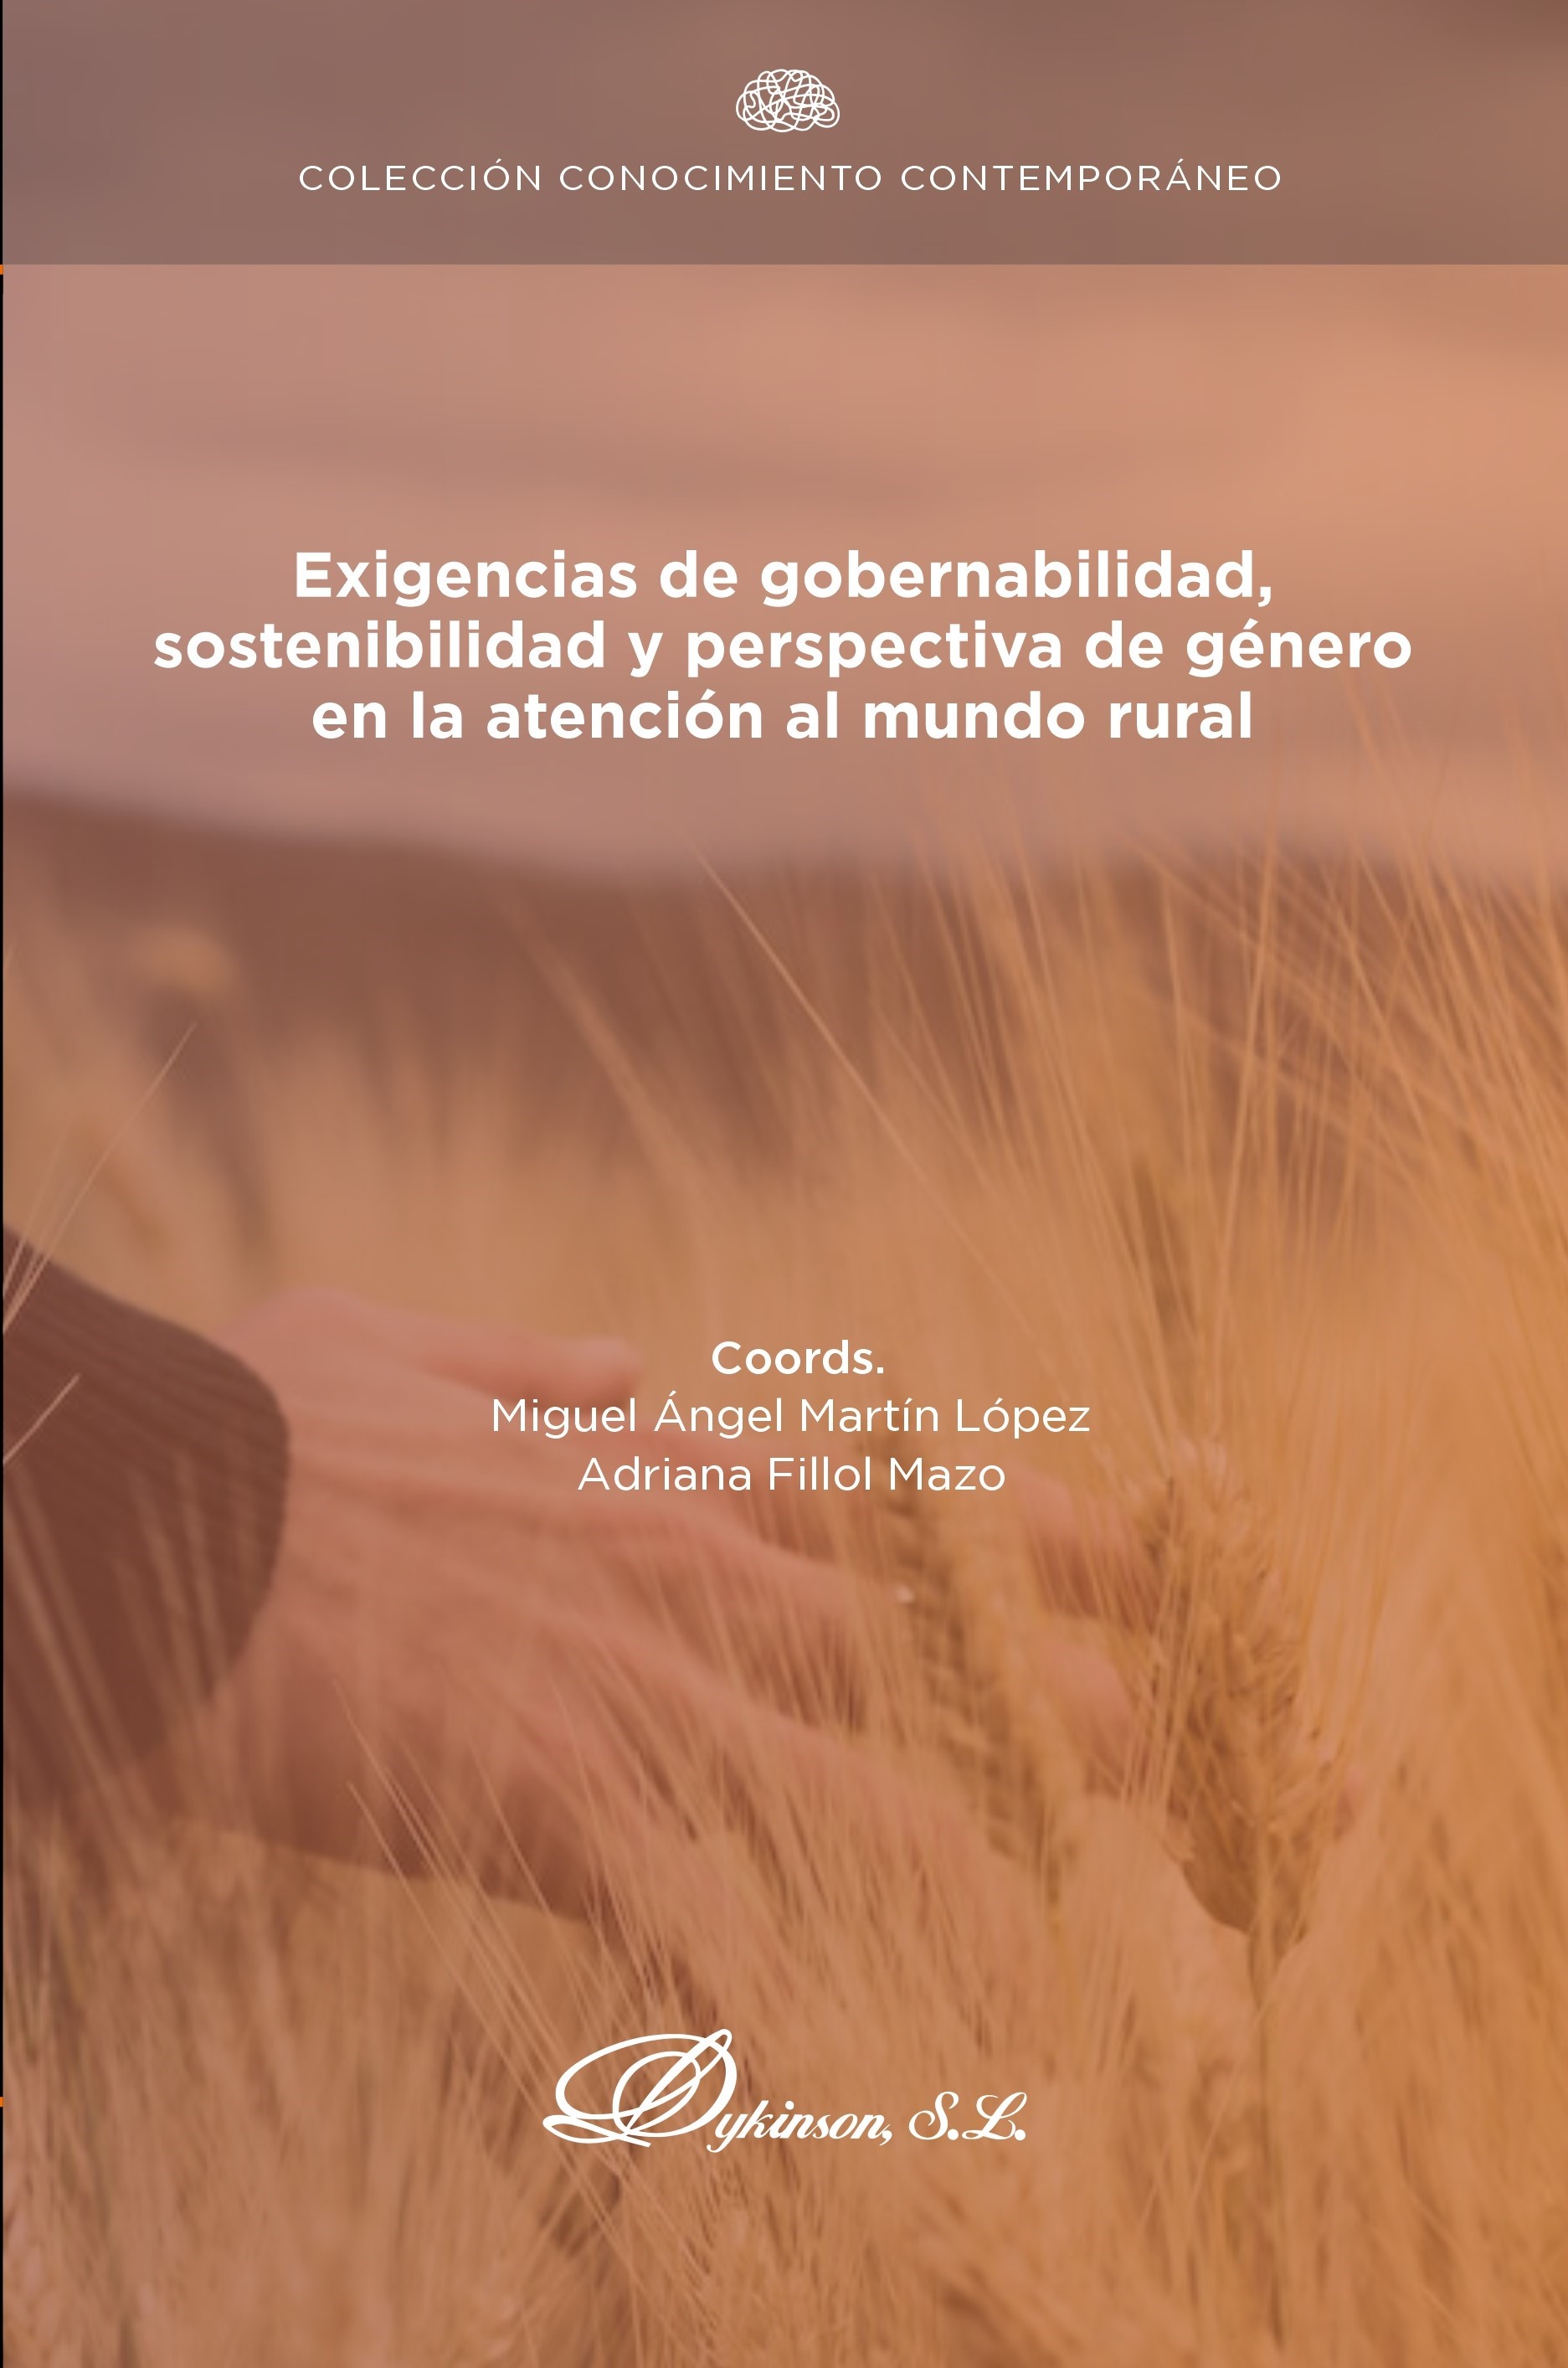 Imagen de portada del libro Exigencias de gobernabilidad, sostenibilidad y perspectiva de género en la atención al mundo rural